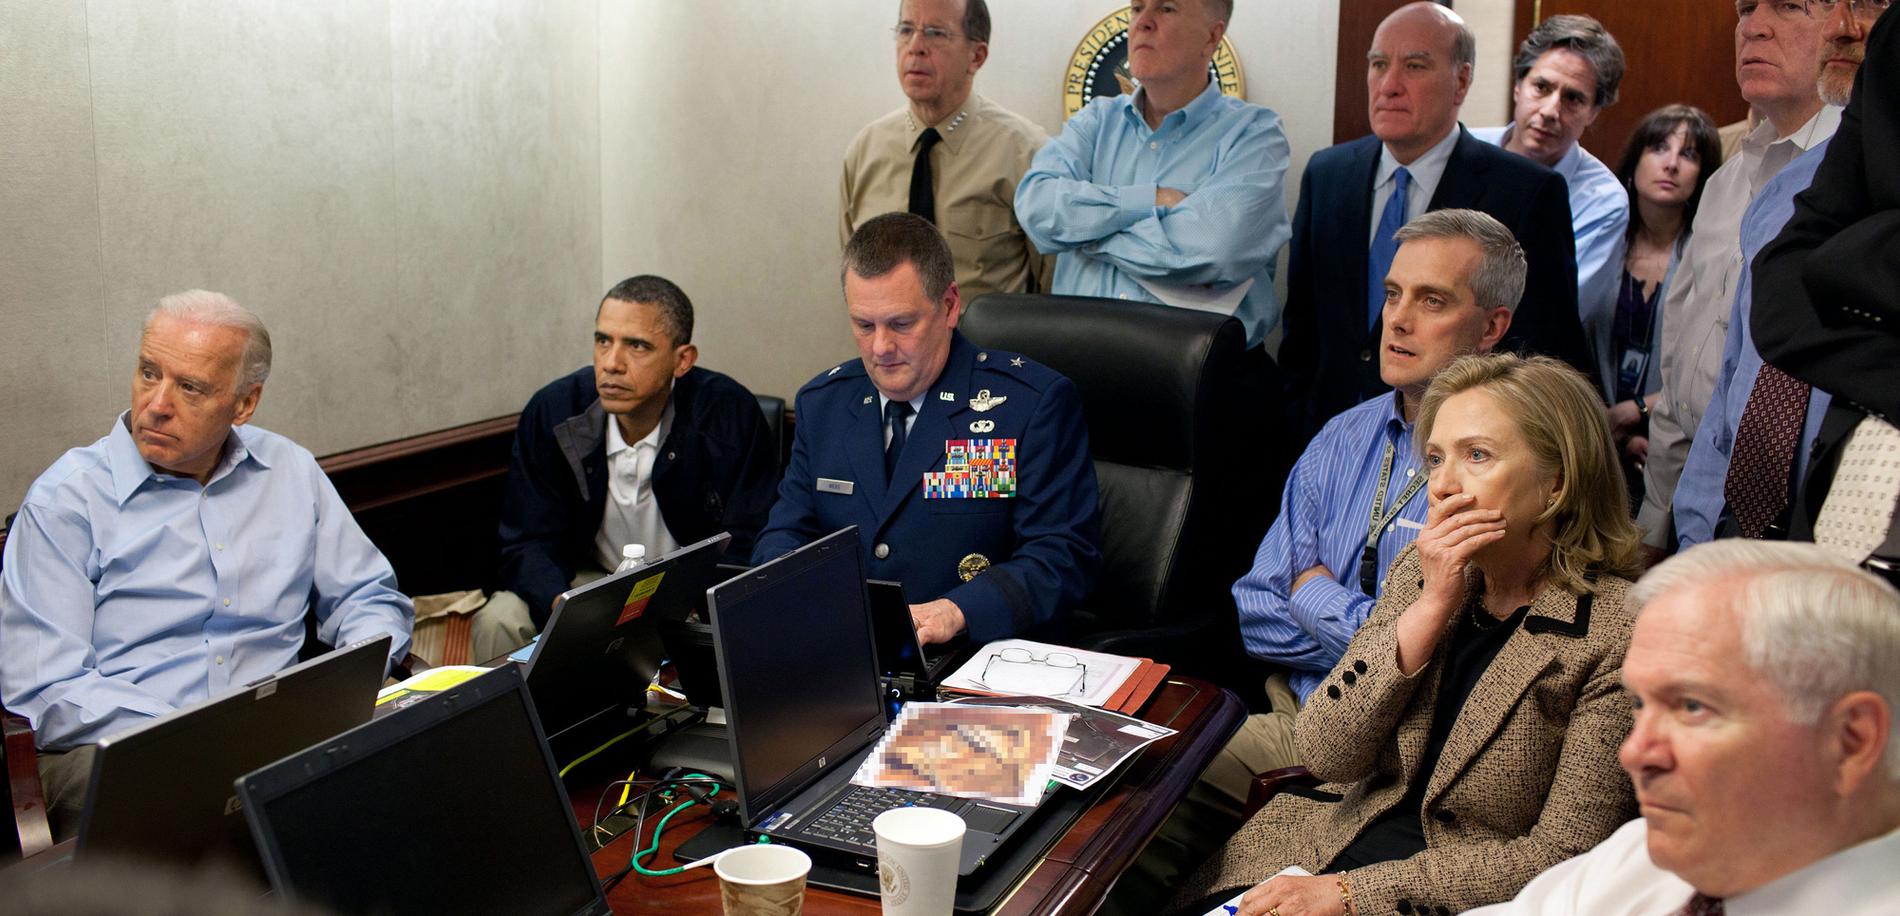 President Barack Obama, utrikesminister Hillary Clinton och deras närmaste medarbetare samlades i Vita husets ”Situation room” för att följa Usama bin Ladins död.